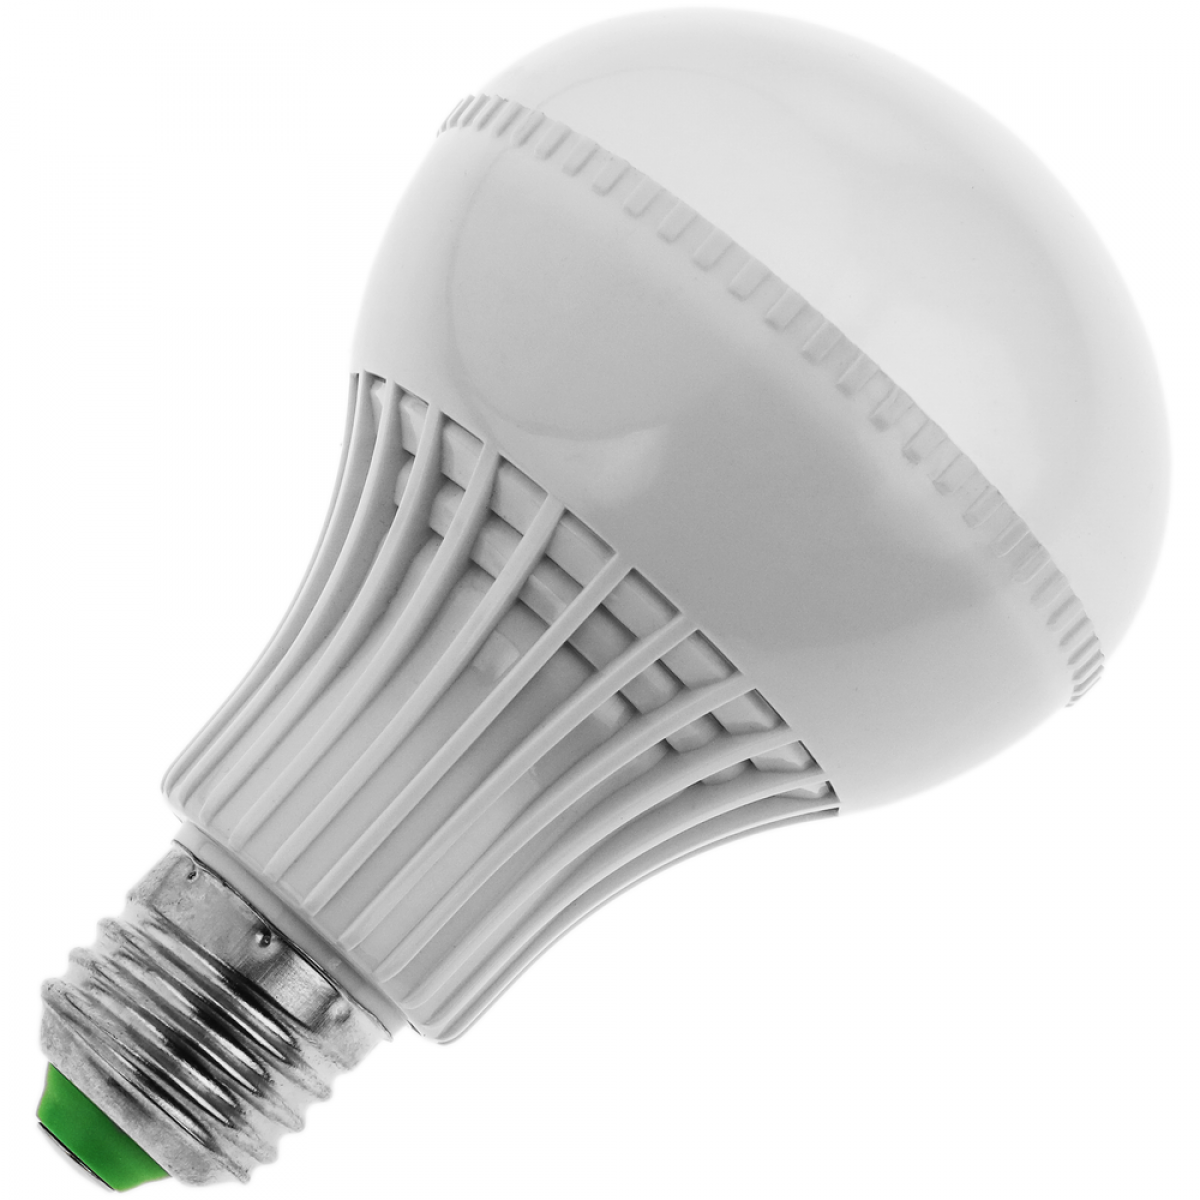 Bematik - Ampoule LED G70 E27 230VAC 9W lumière chaude 3000K - Ampoules LED